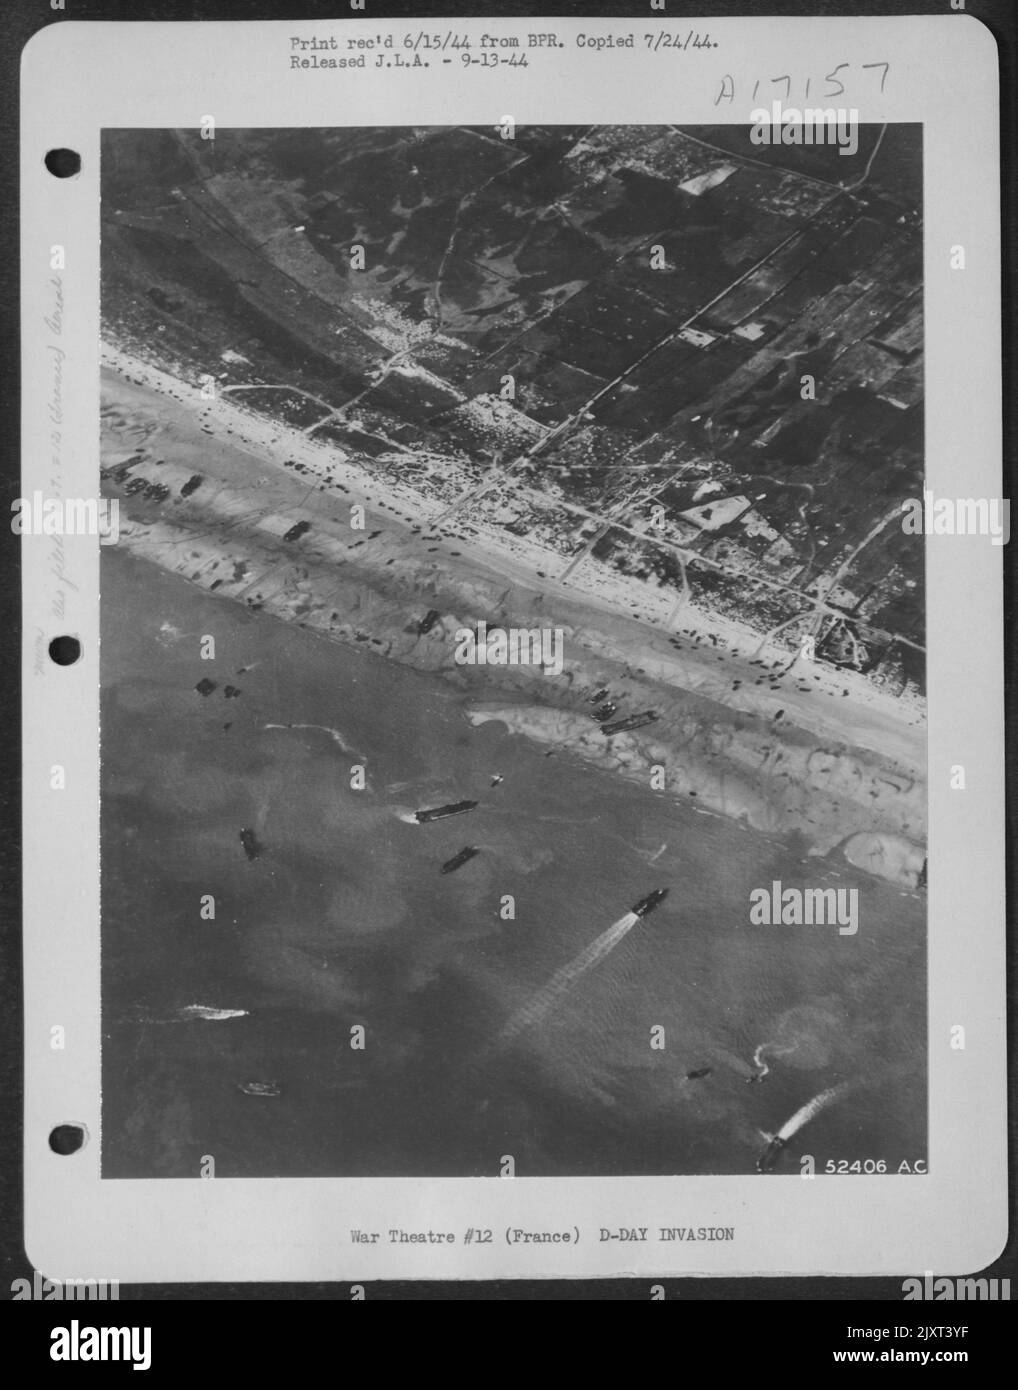 TRÁFICO PESADO EN LAS PLAYAS DE INVASIÓN. .. Así es como las playas de Normandía miraron en el Día D de uno de los 9th AF Marauder mediano bombarderos que salió en estrecho apoyo de las tropas aliadas de tierra. Bombardeo desde altitudes más bajas de lo habitual Foto de stock